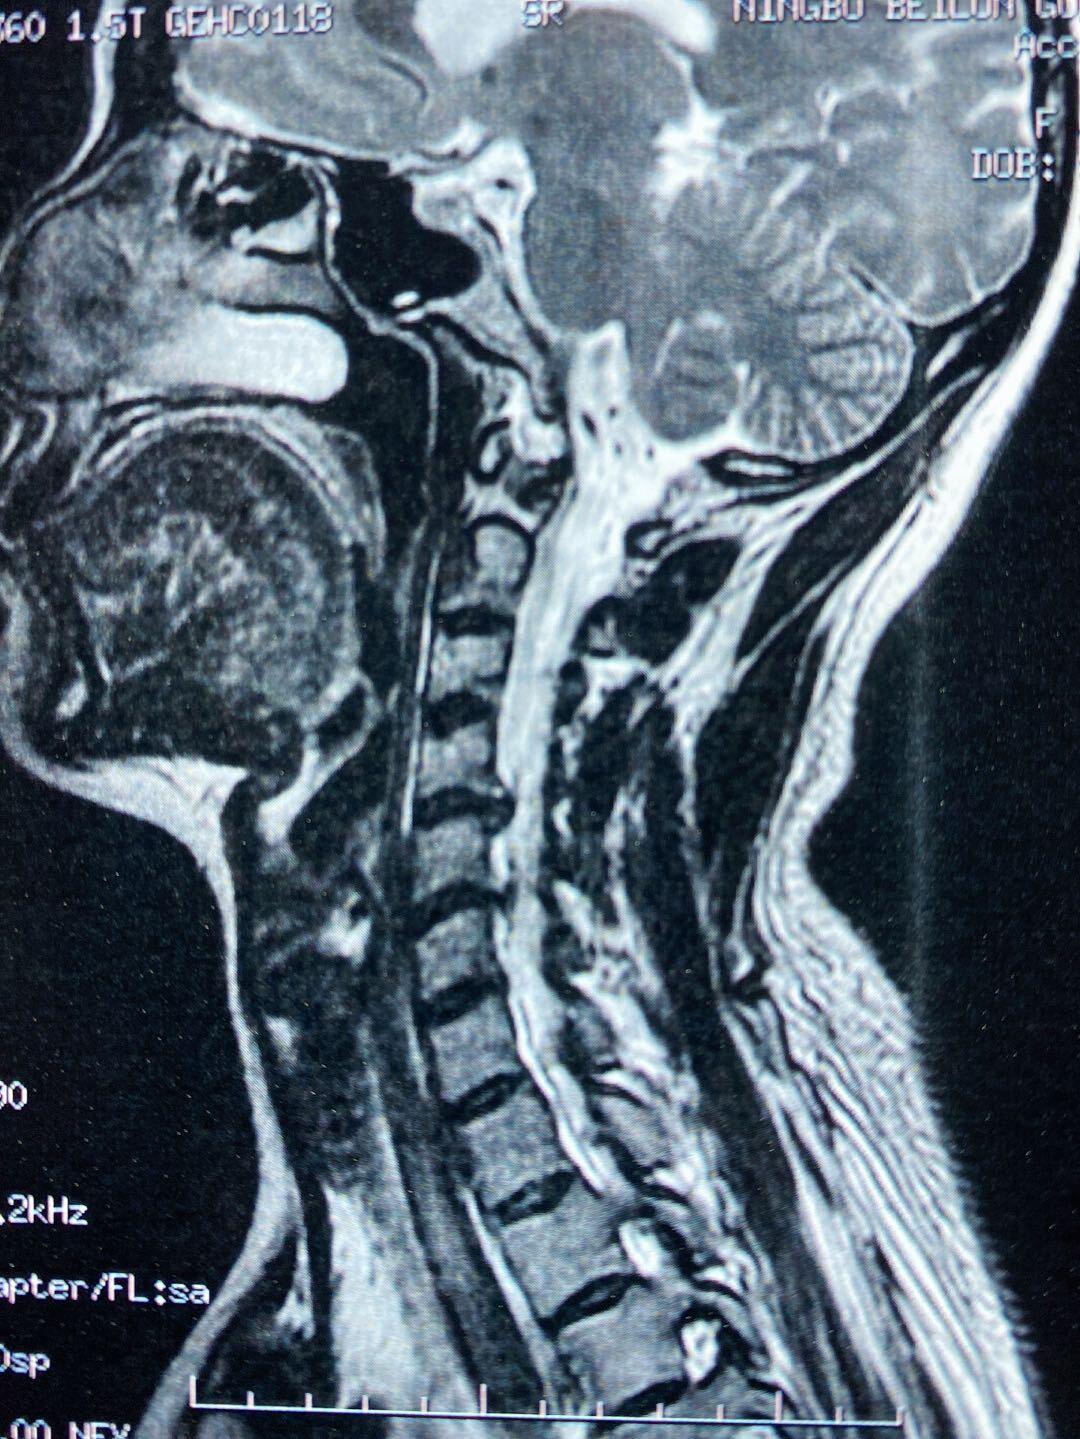 术前磁共振显示两节段巨大椎间盘突出